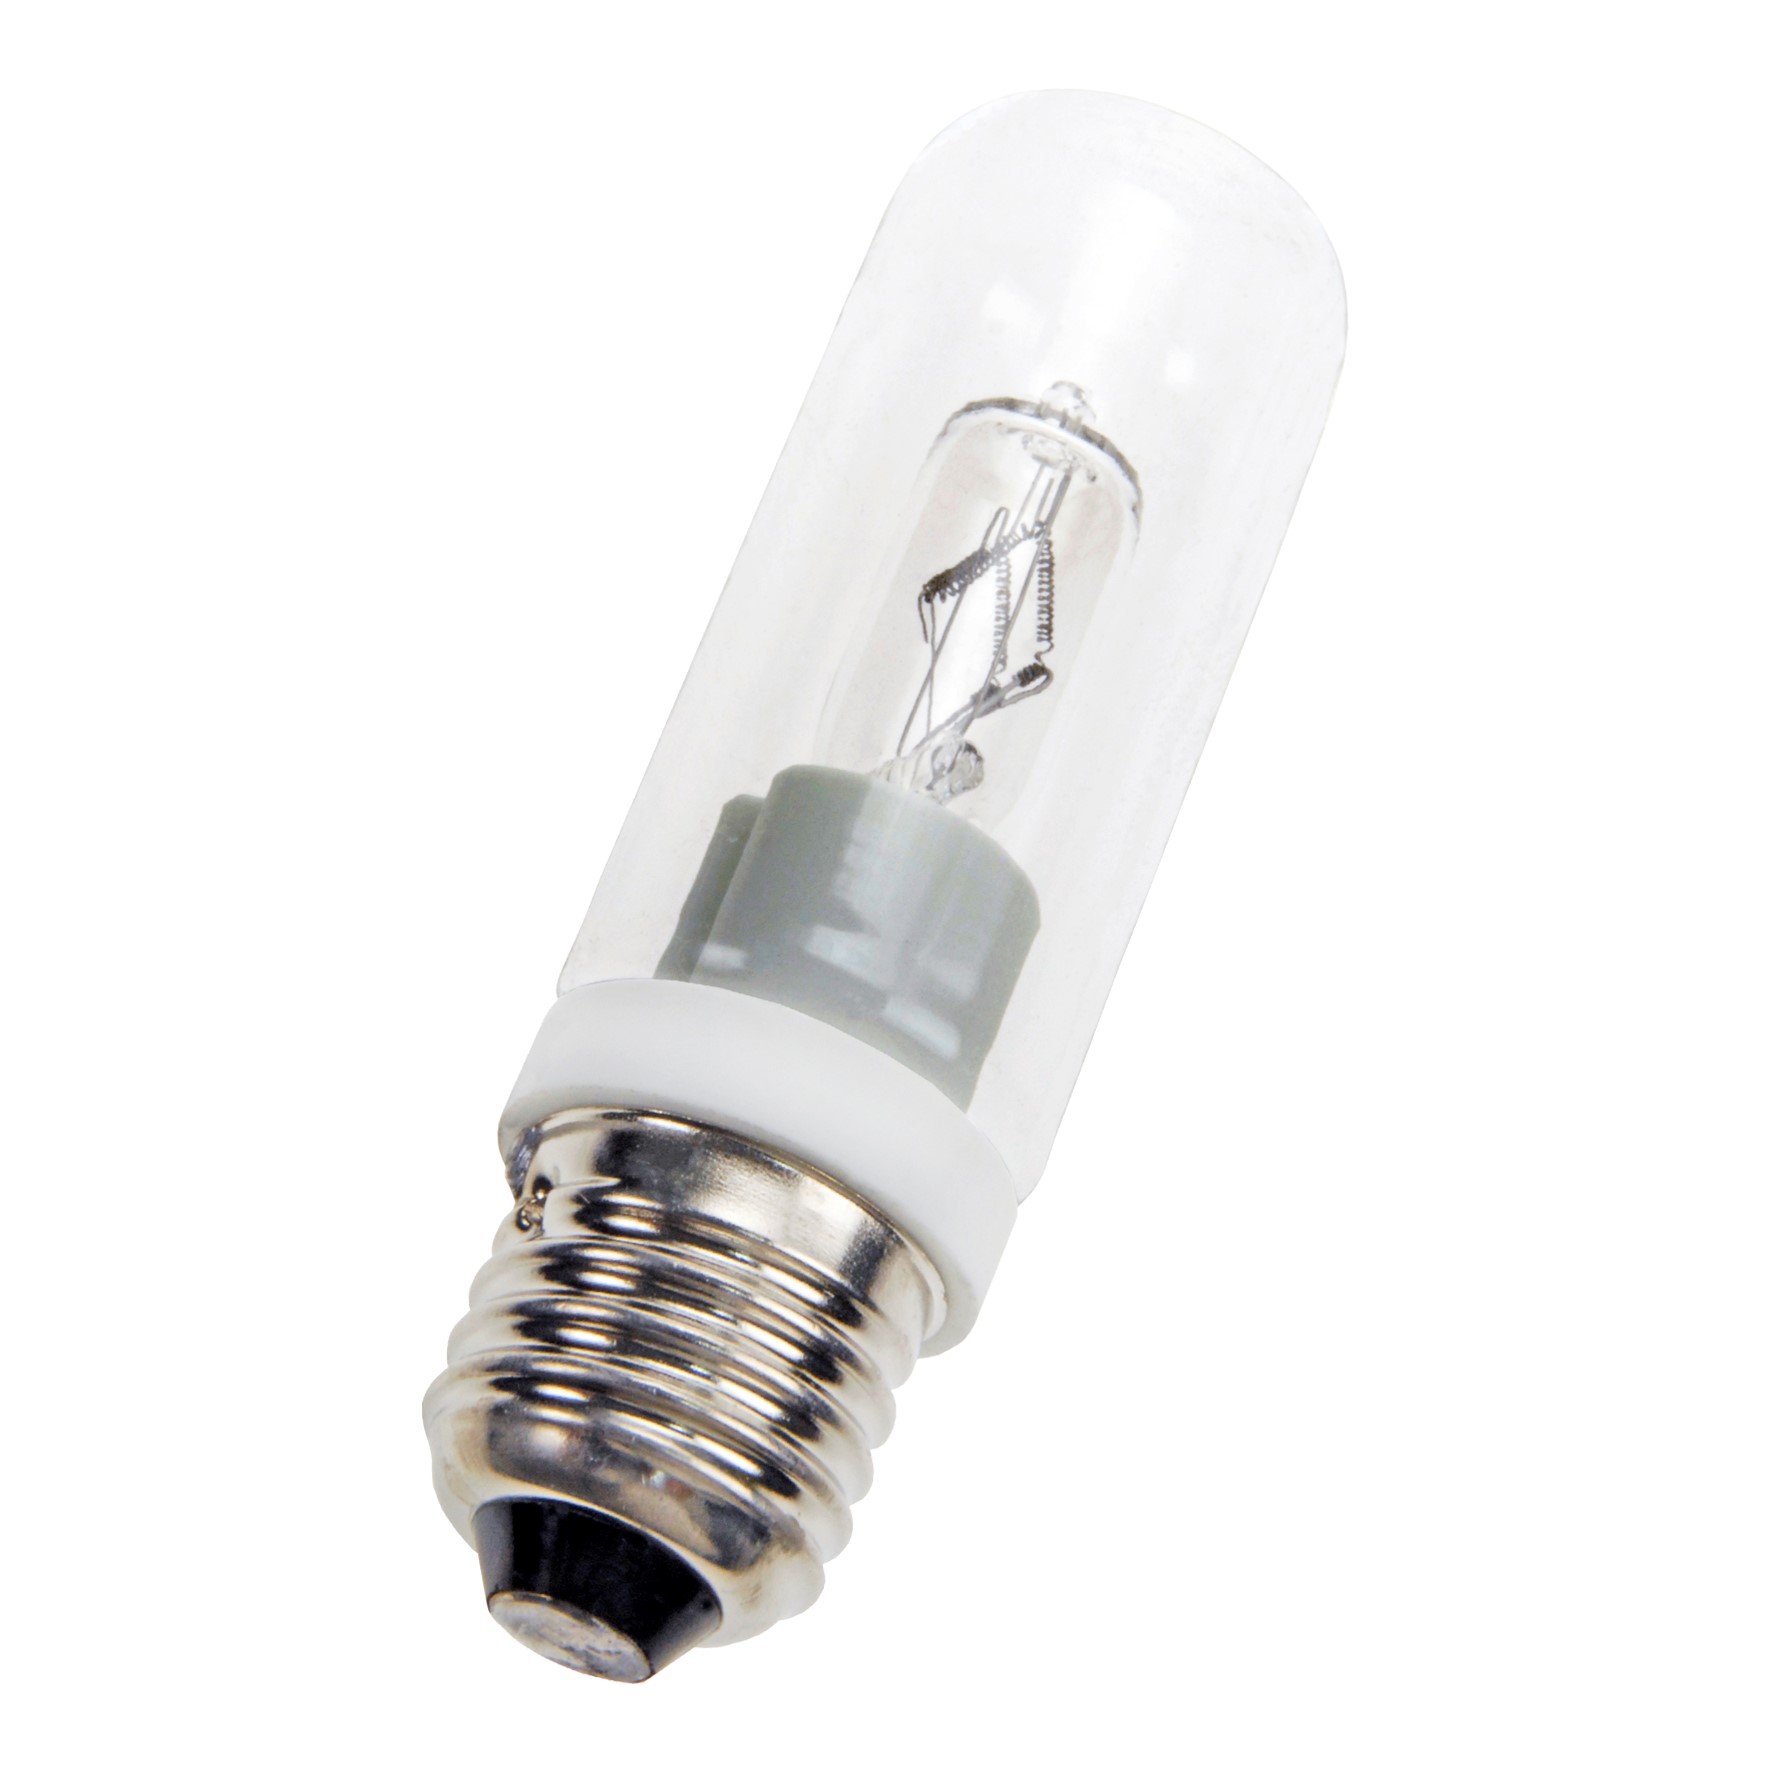 Osram Halogen-Lampe Eco A E27 64547 77W Ersatz Glühlampe